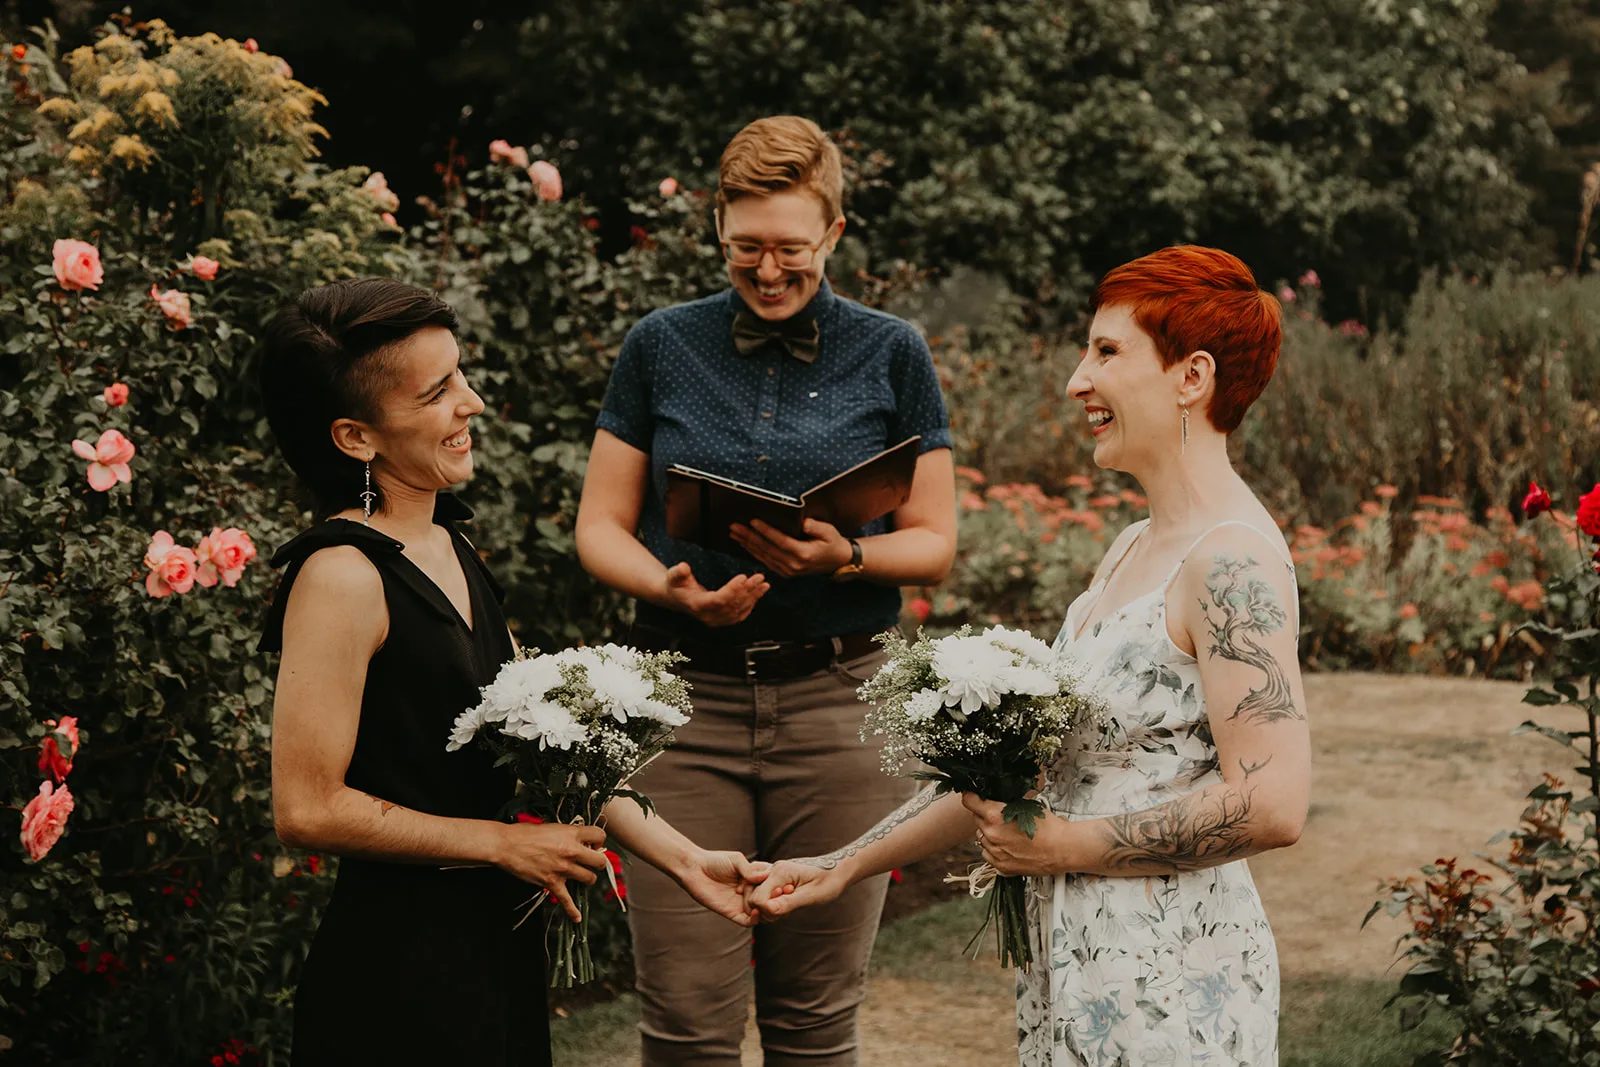 VanDusen botanical garden wedding ceremony with Young Hip & Married, queer wedding